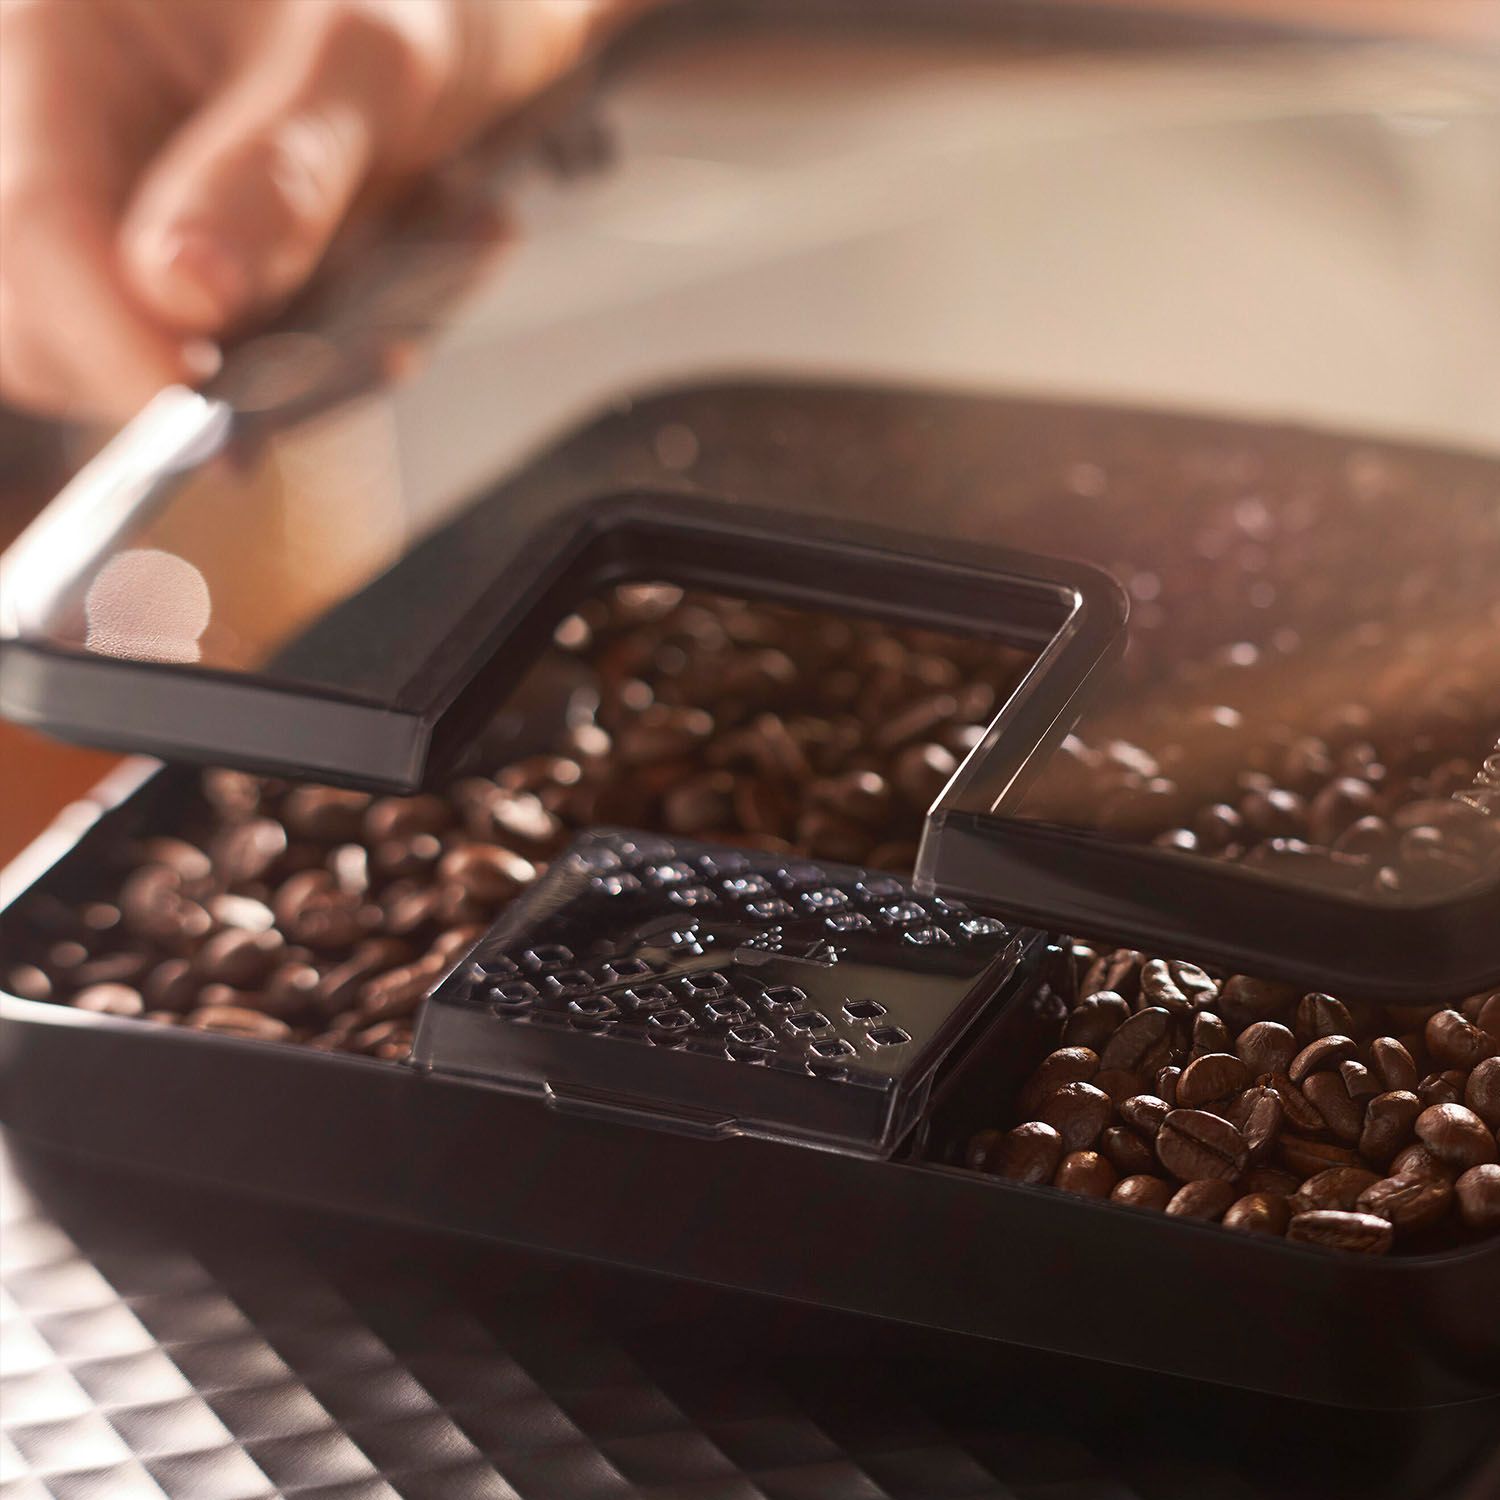 Philips Máquina de café espresso totalmente automática serie 3200 con café  helado, EP3241/74, filtro AquaClean negro y paquete de 2 filtros Saeco